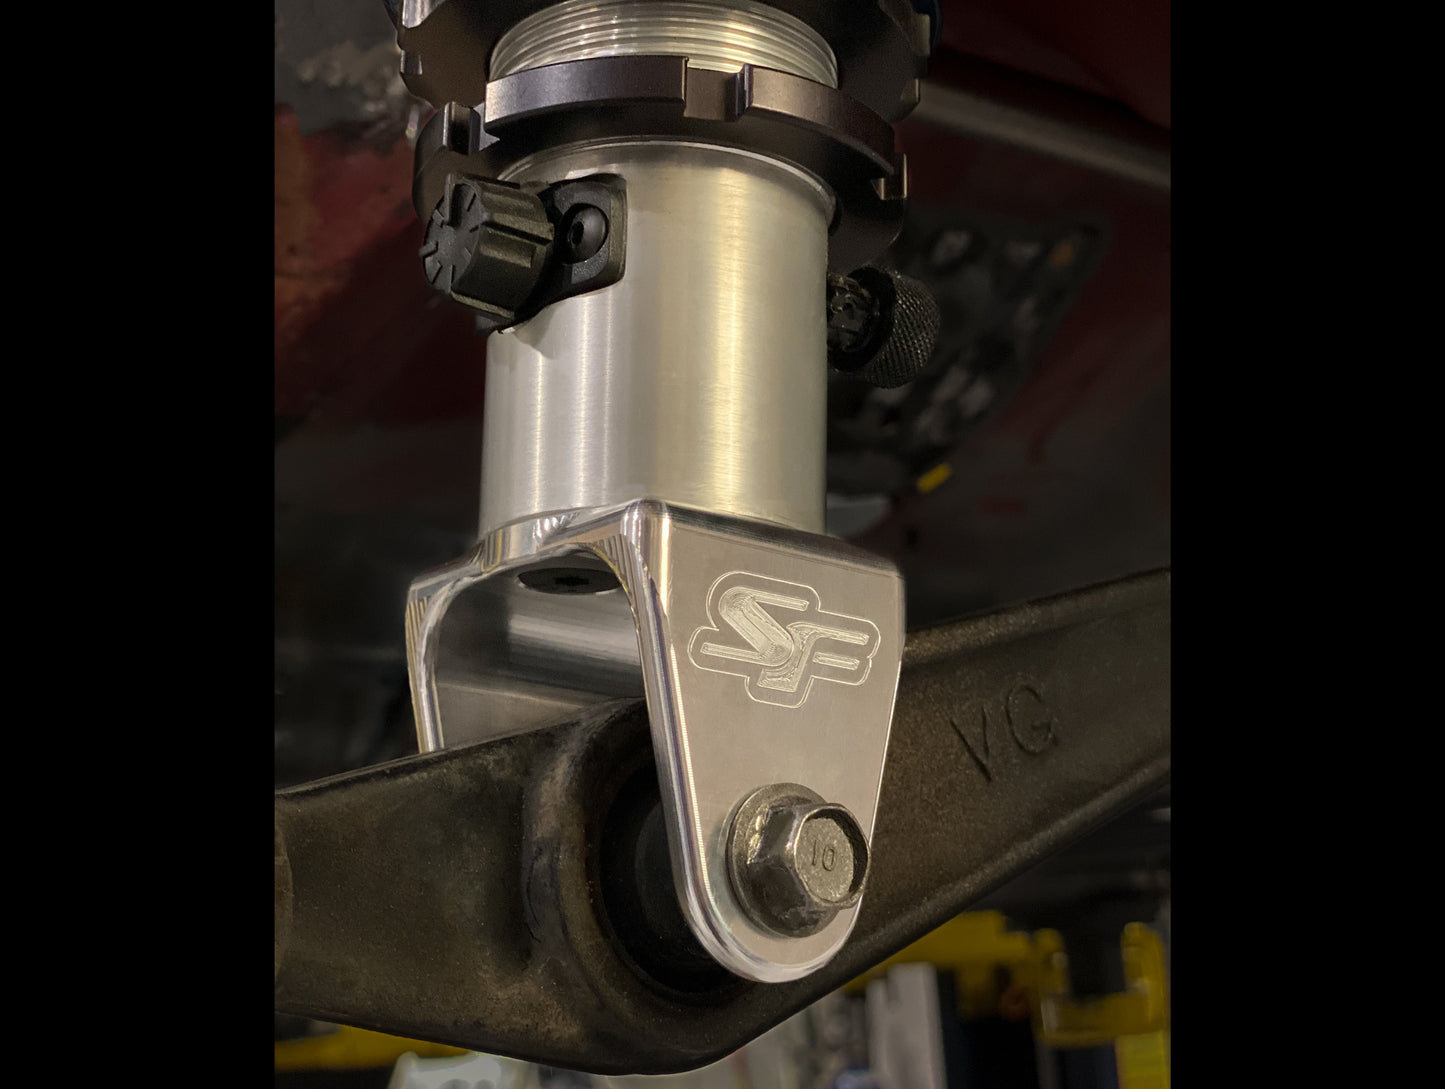 SpeedFactory Billet Honda AWD / FWD Strange Engineering Rear Lower Shock Mount Brackets